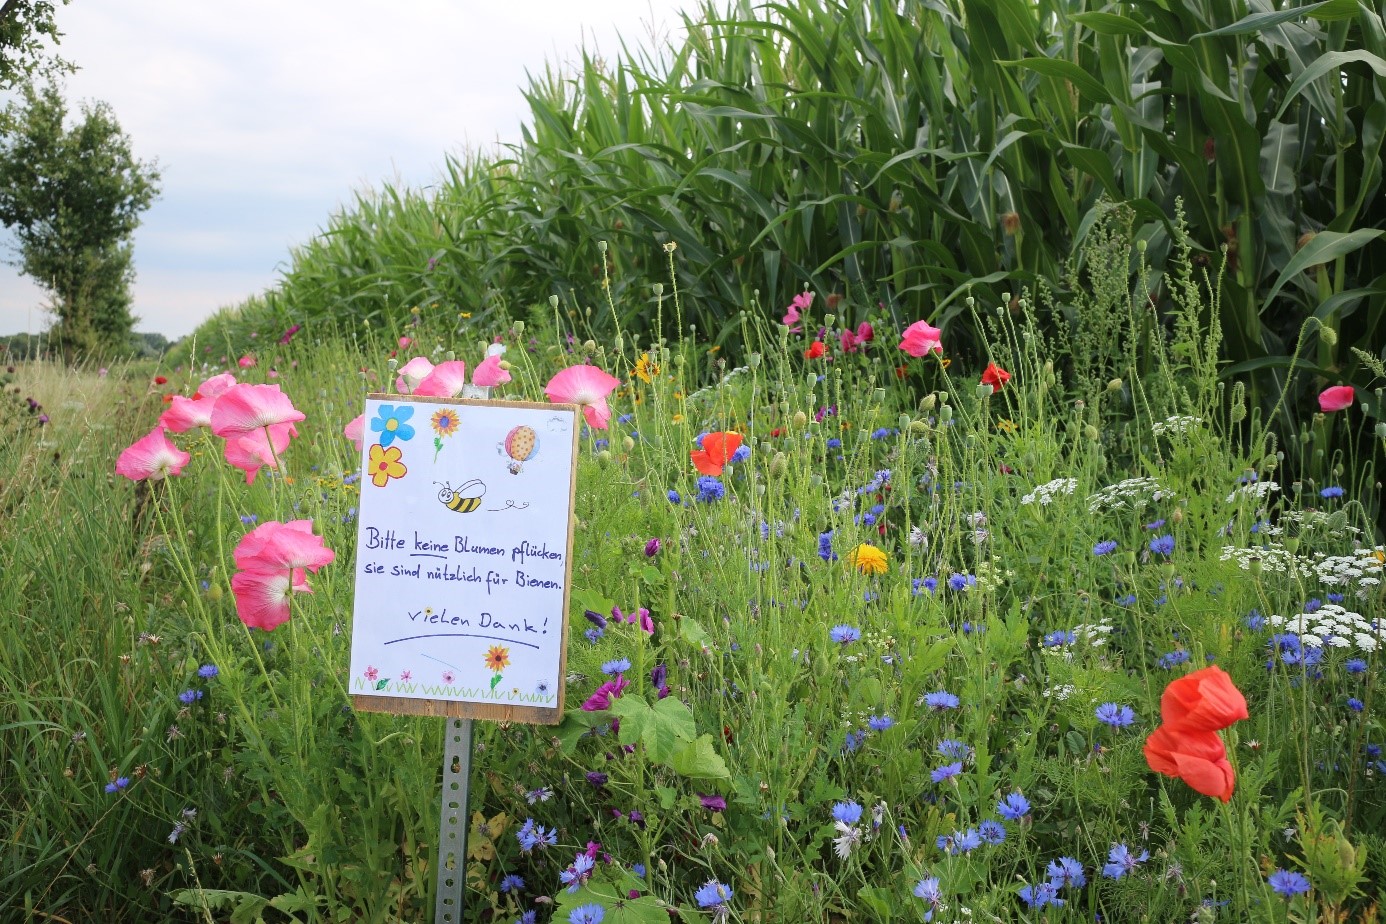 Das Bild zeigt einen blühenden Blühstreifen vor einem Maisfeld. Im Vordergrund sieht man ein von Kinderhand gemaltes Schild mit der Aufschrift: Bitte keine Blumen pflücken, sie sind nützlich für Bienen. Vielen Dank!